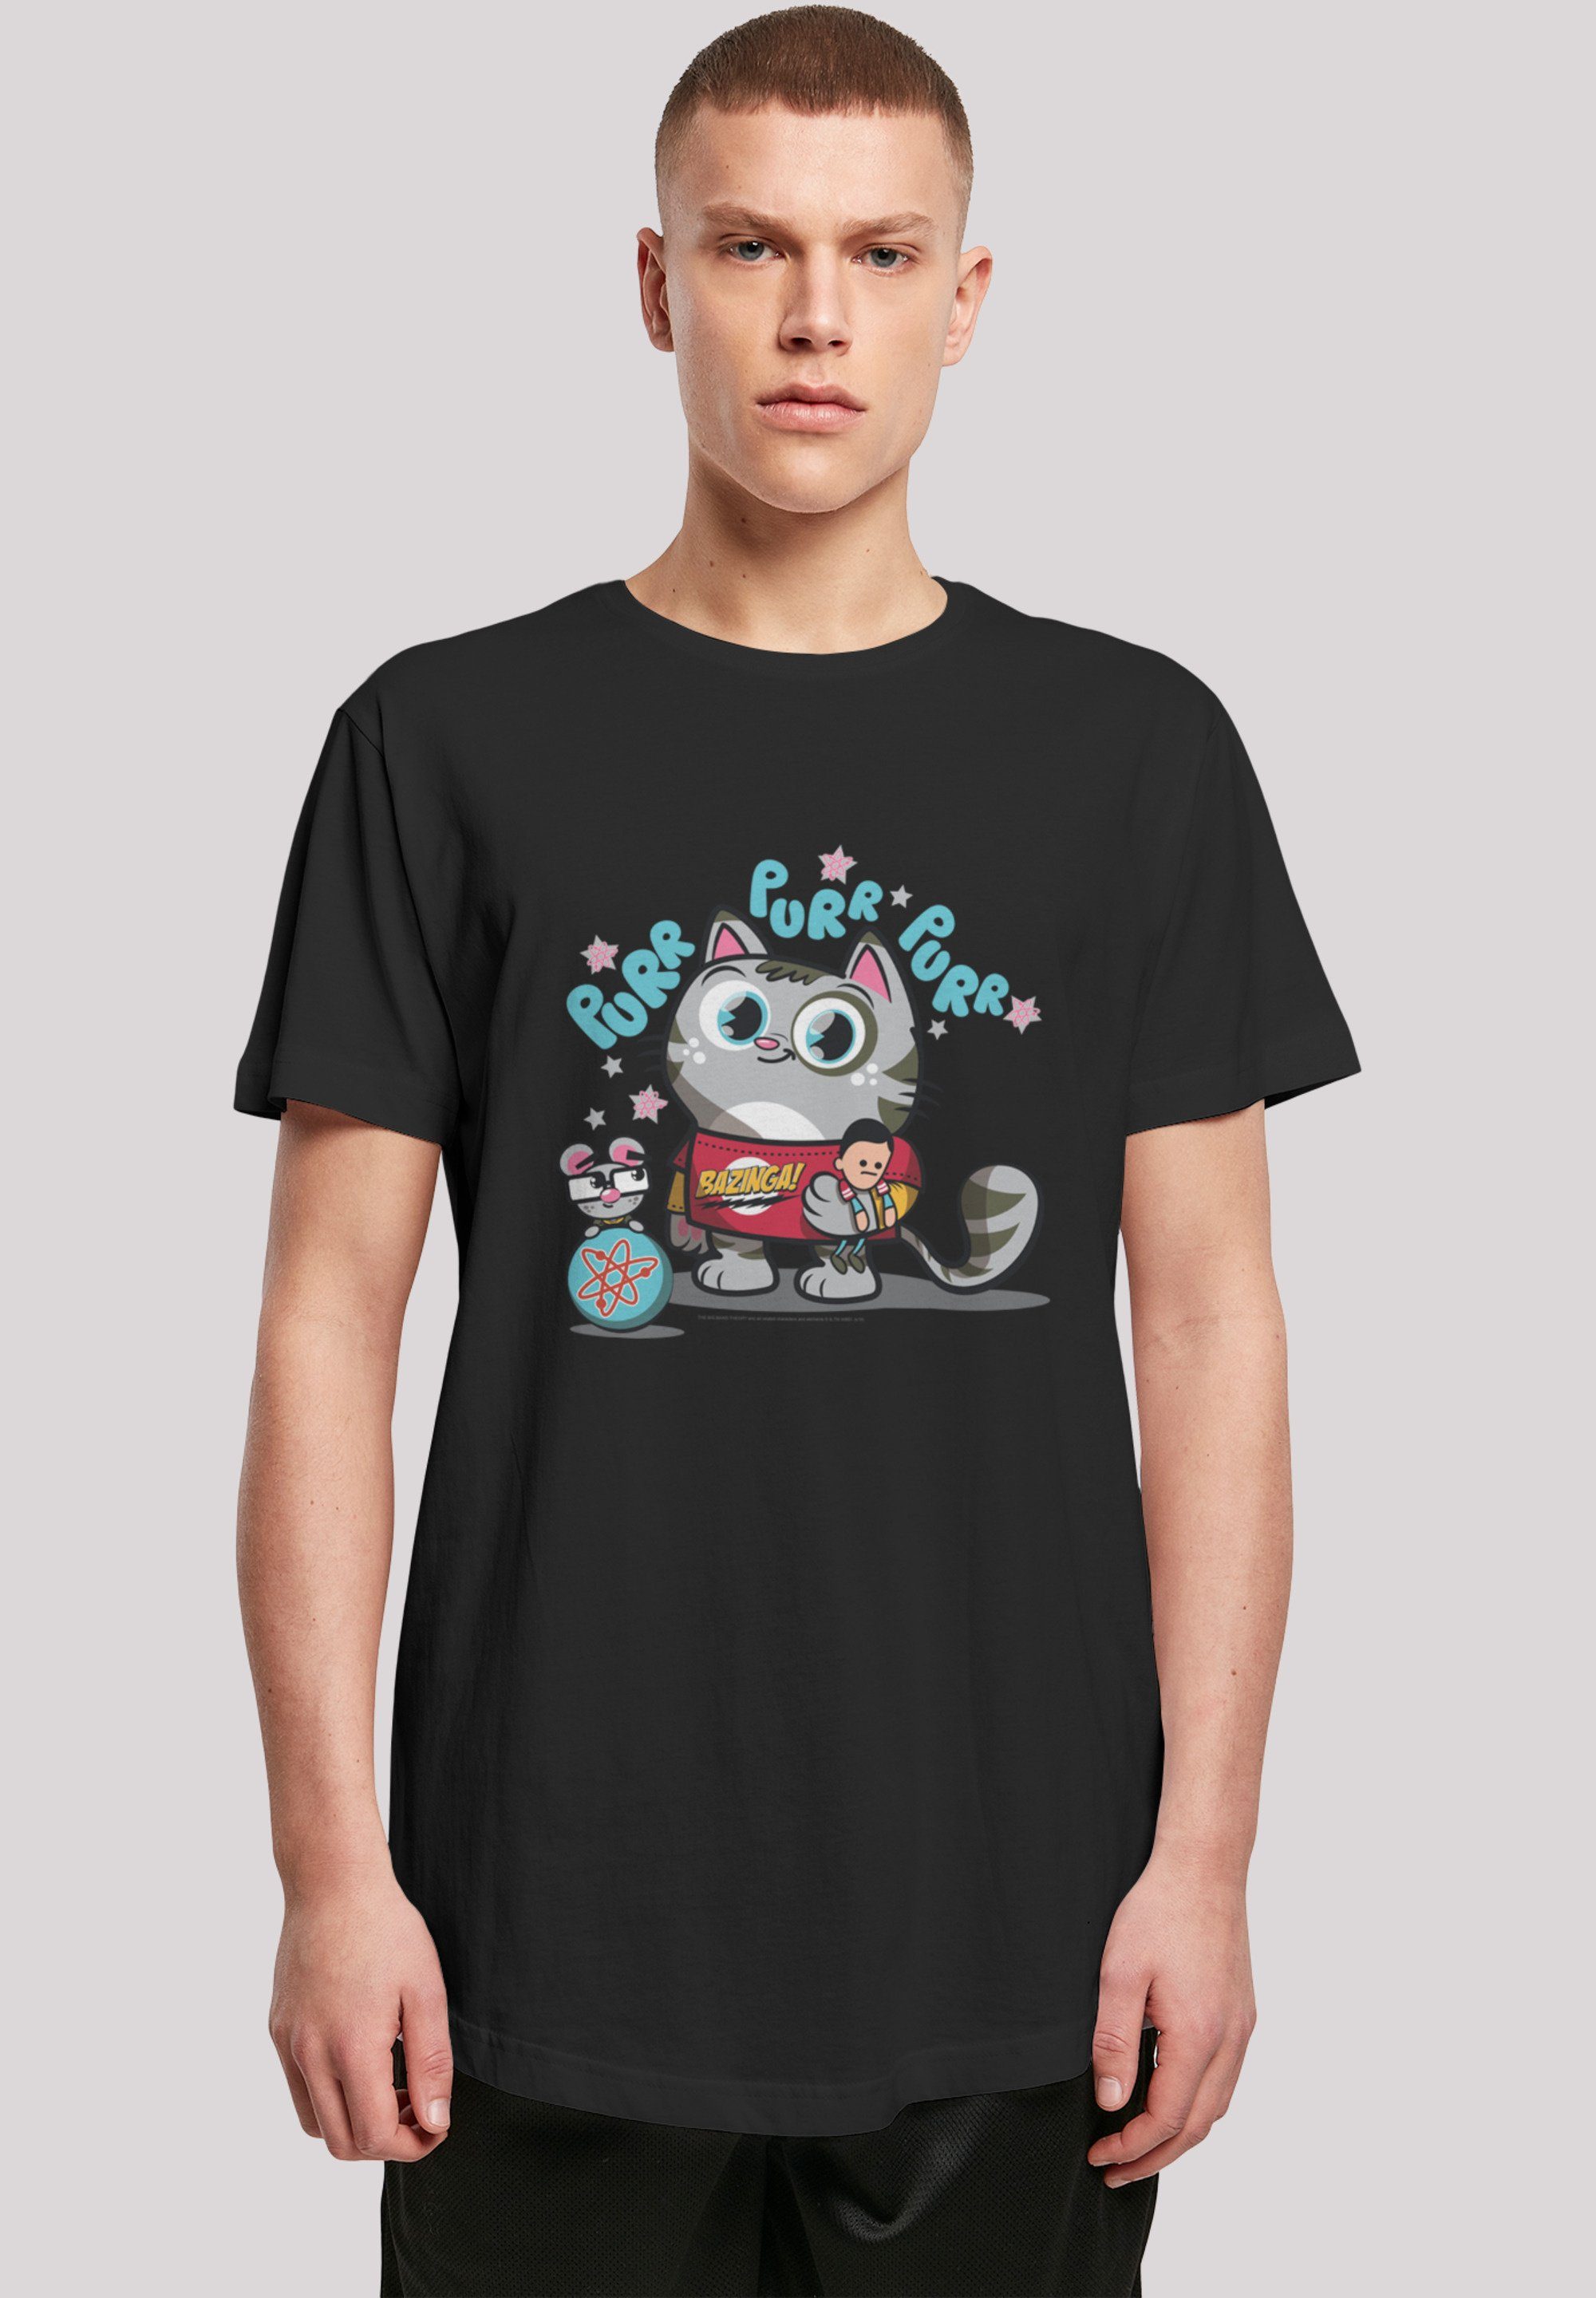 Kitty' 'Big Shirt Bang Cut Theory Bazinga Long Print schwarz F4NT4STIC T-Shirt